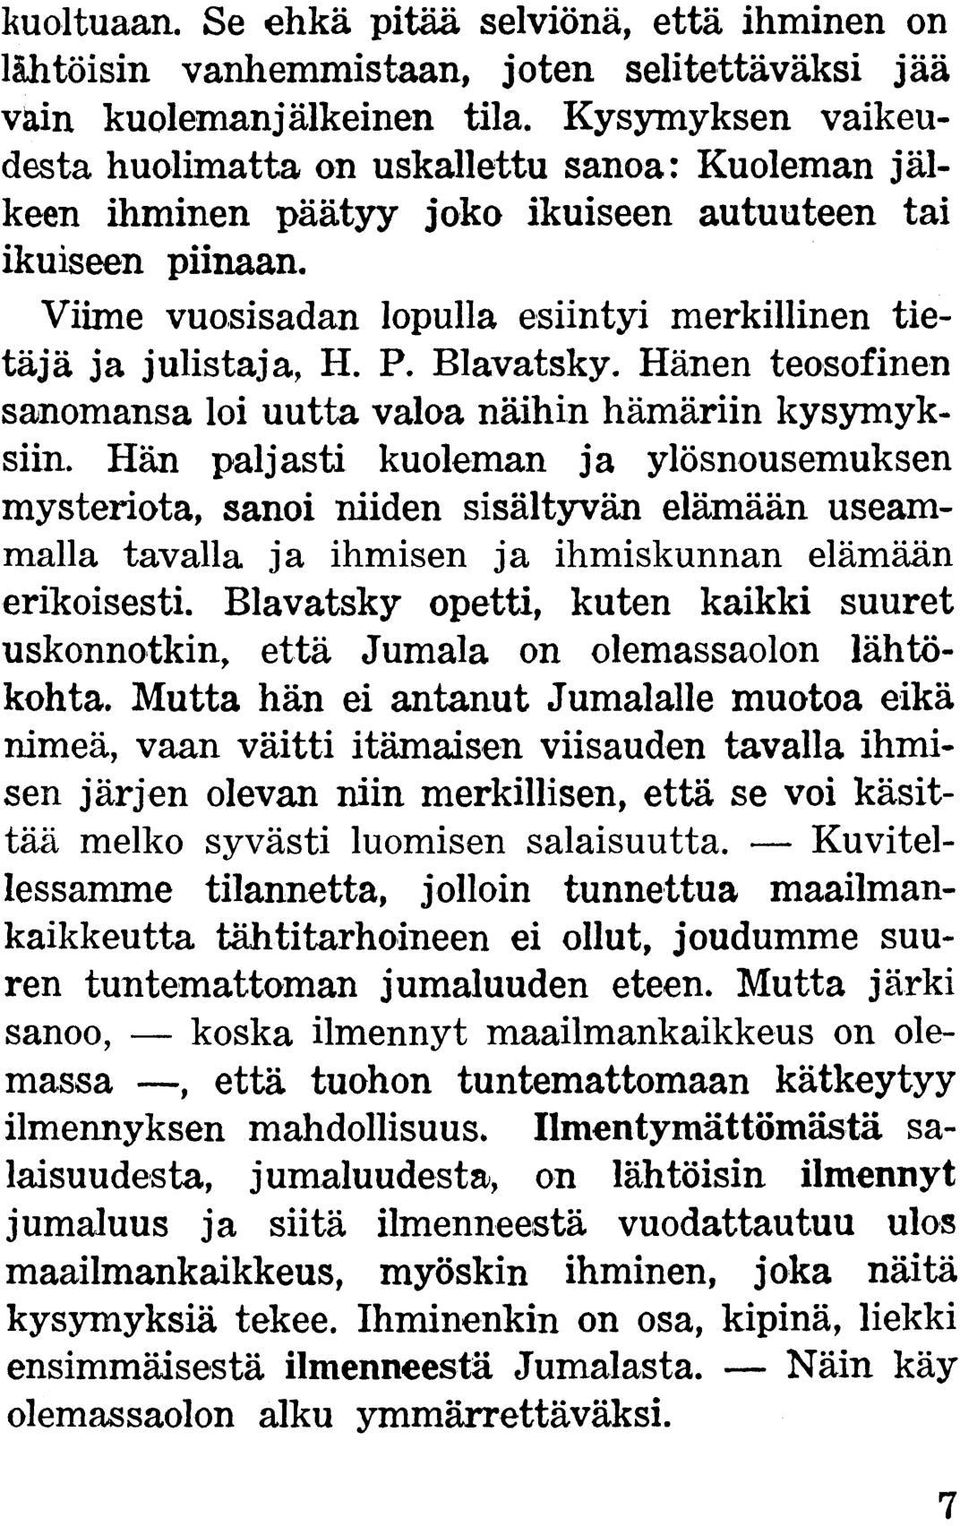 Viime vuosisadan lopulla esiintyi merkillinen tietäjä ja julistaja, H. P. Blavatsky. Hänen teosofinen sanomansa loi uutta valoa näihin hämäriin kysymyksiin.